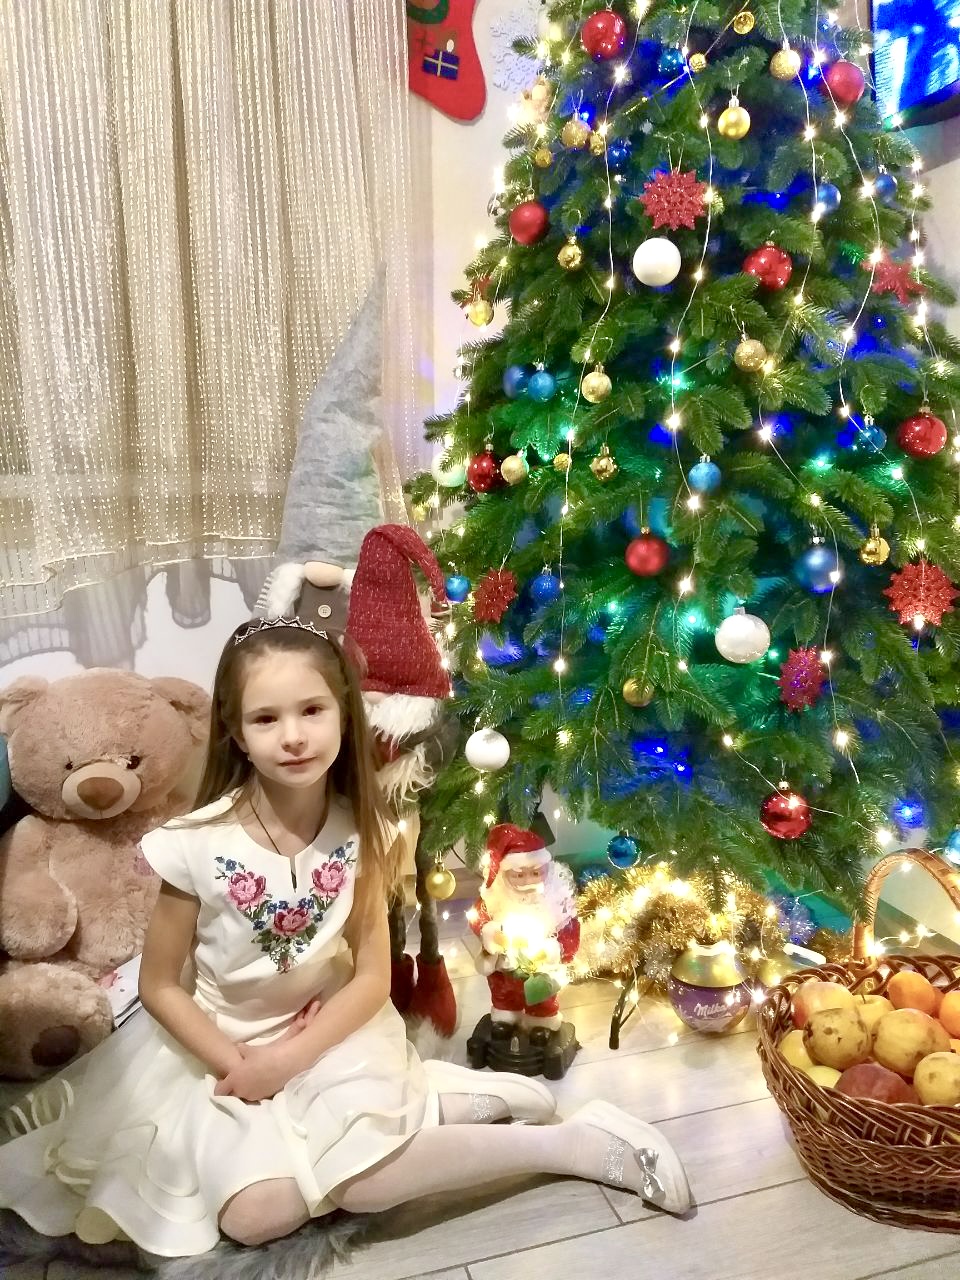 Julefeiring i Ukraina og Veronica med hvit kjole med roser på